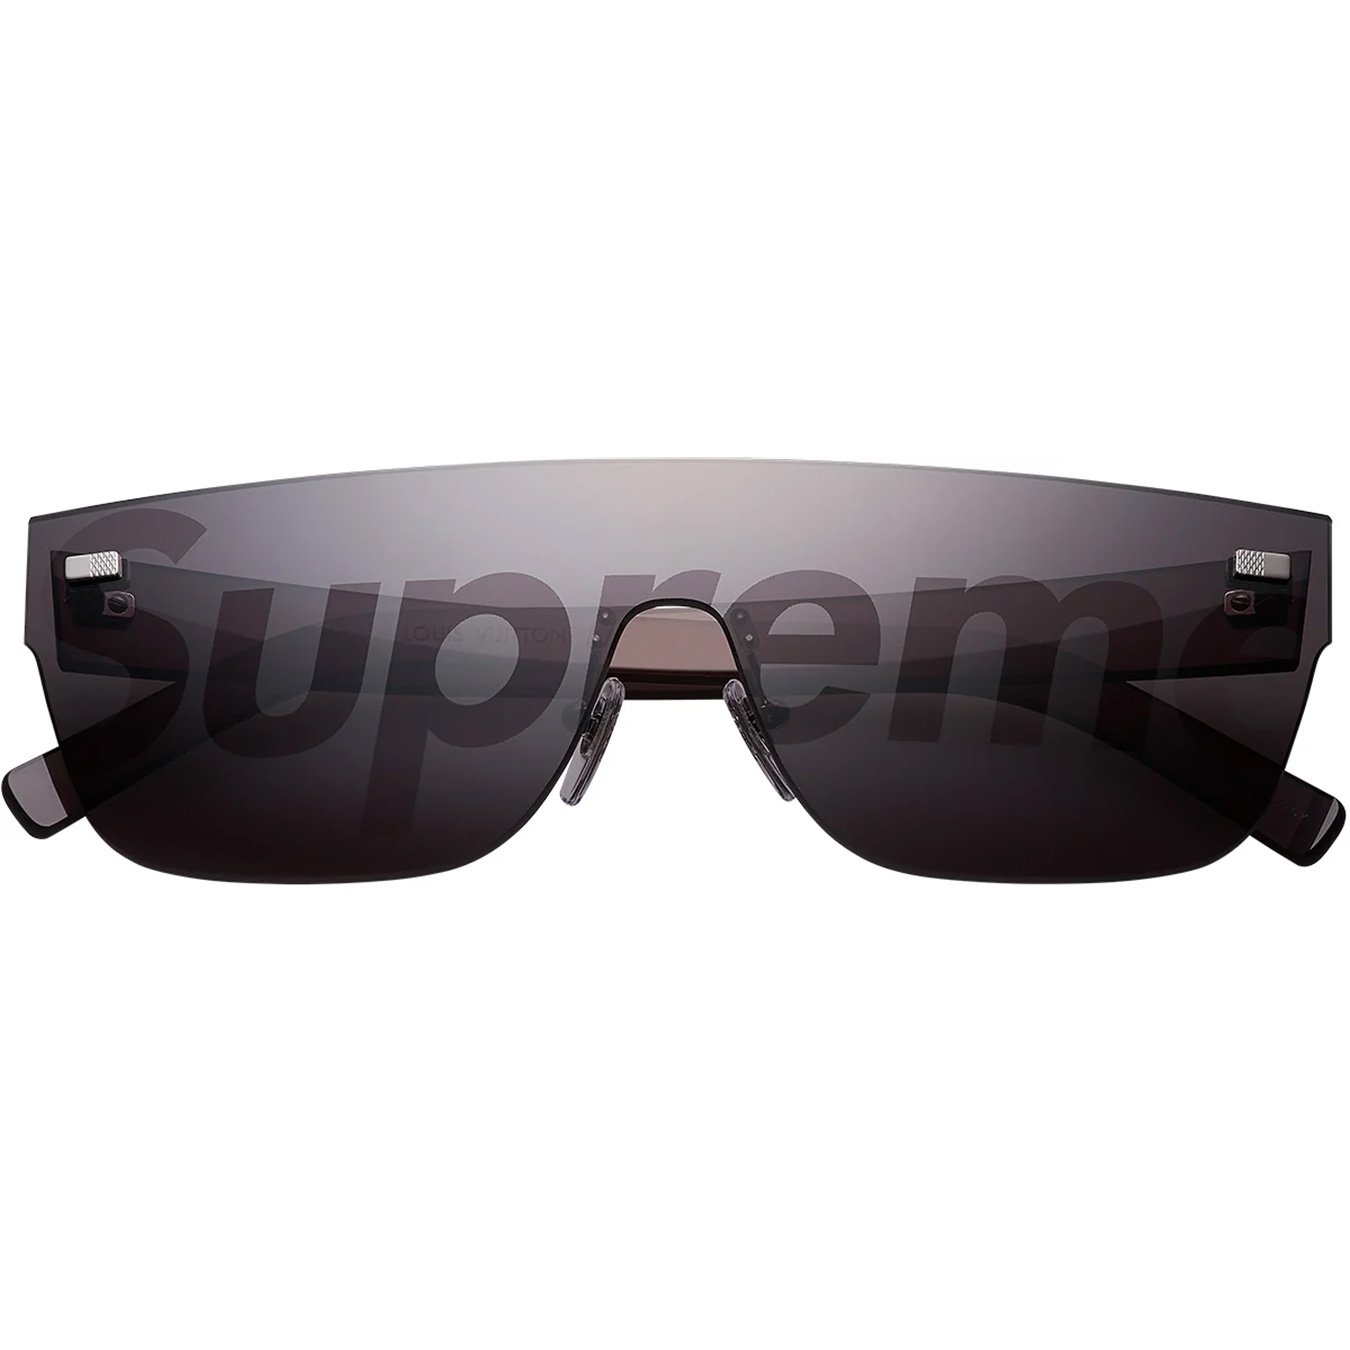 Louis Vuitton/Supreme City Mask SP Sunglasses